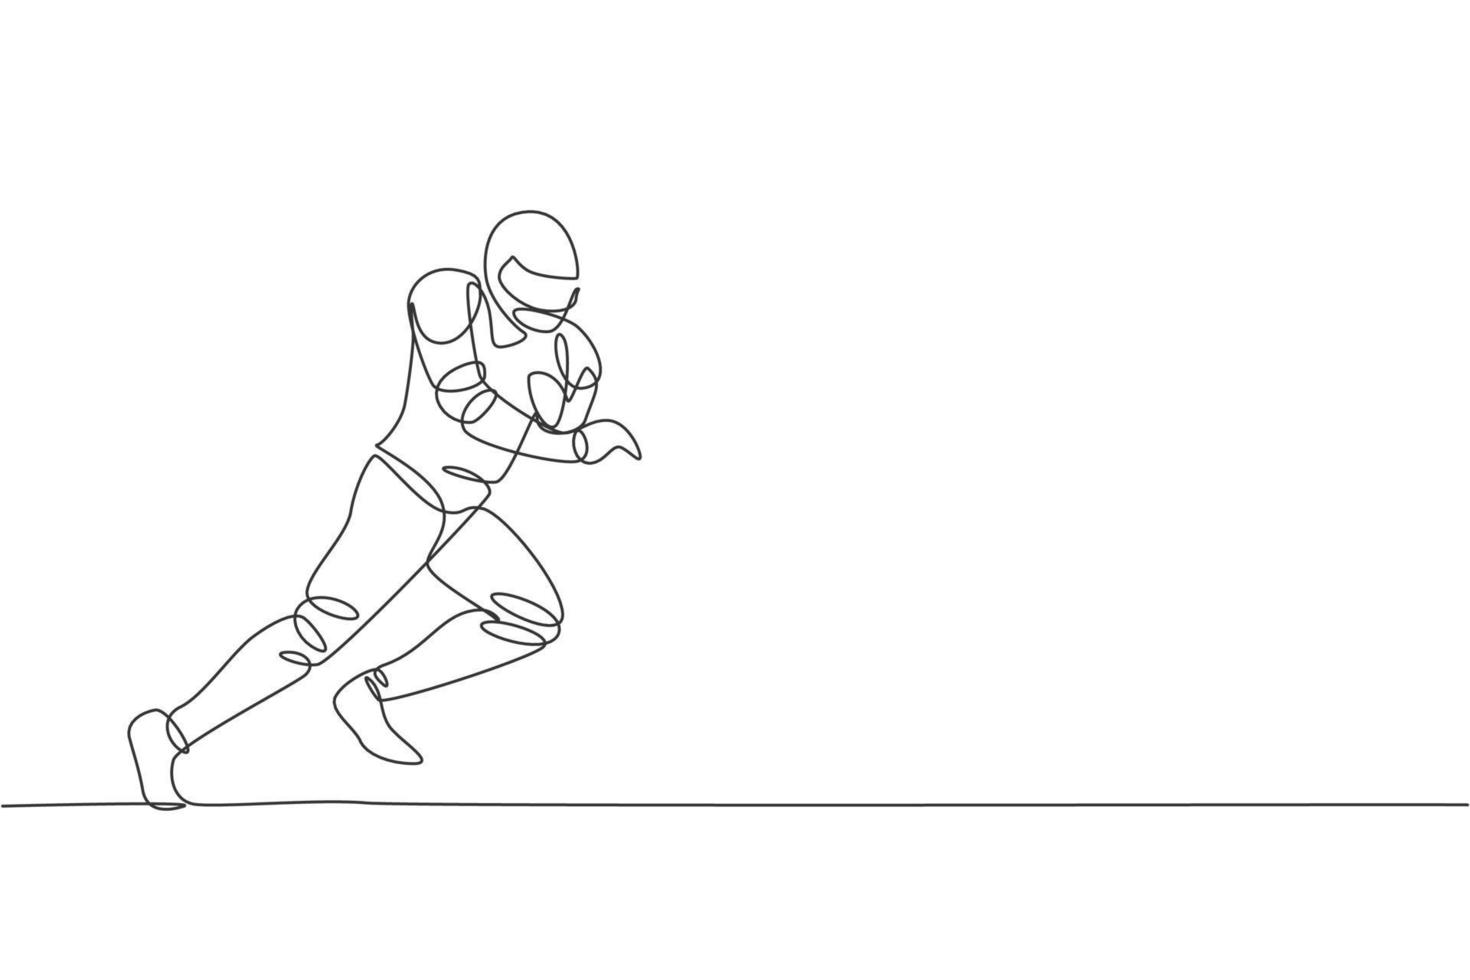 dibujo de una sola línea continua joven jugador de fútbol americano ágil corriendo rápido para marcar un gol para los medios de competencia. concepto de ejercicio deportivo. ilustración gráfica de vector de diseño de dibujo de una línea de moda